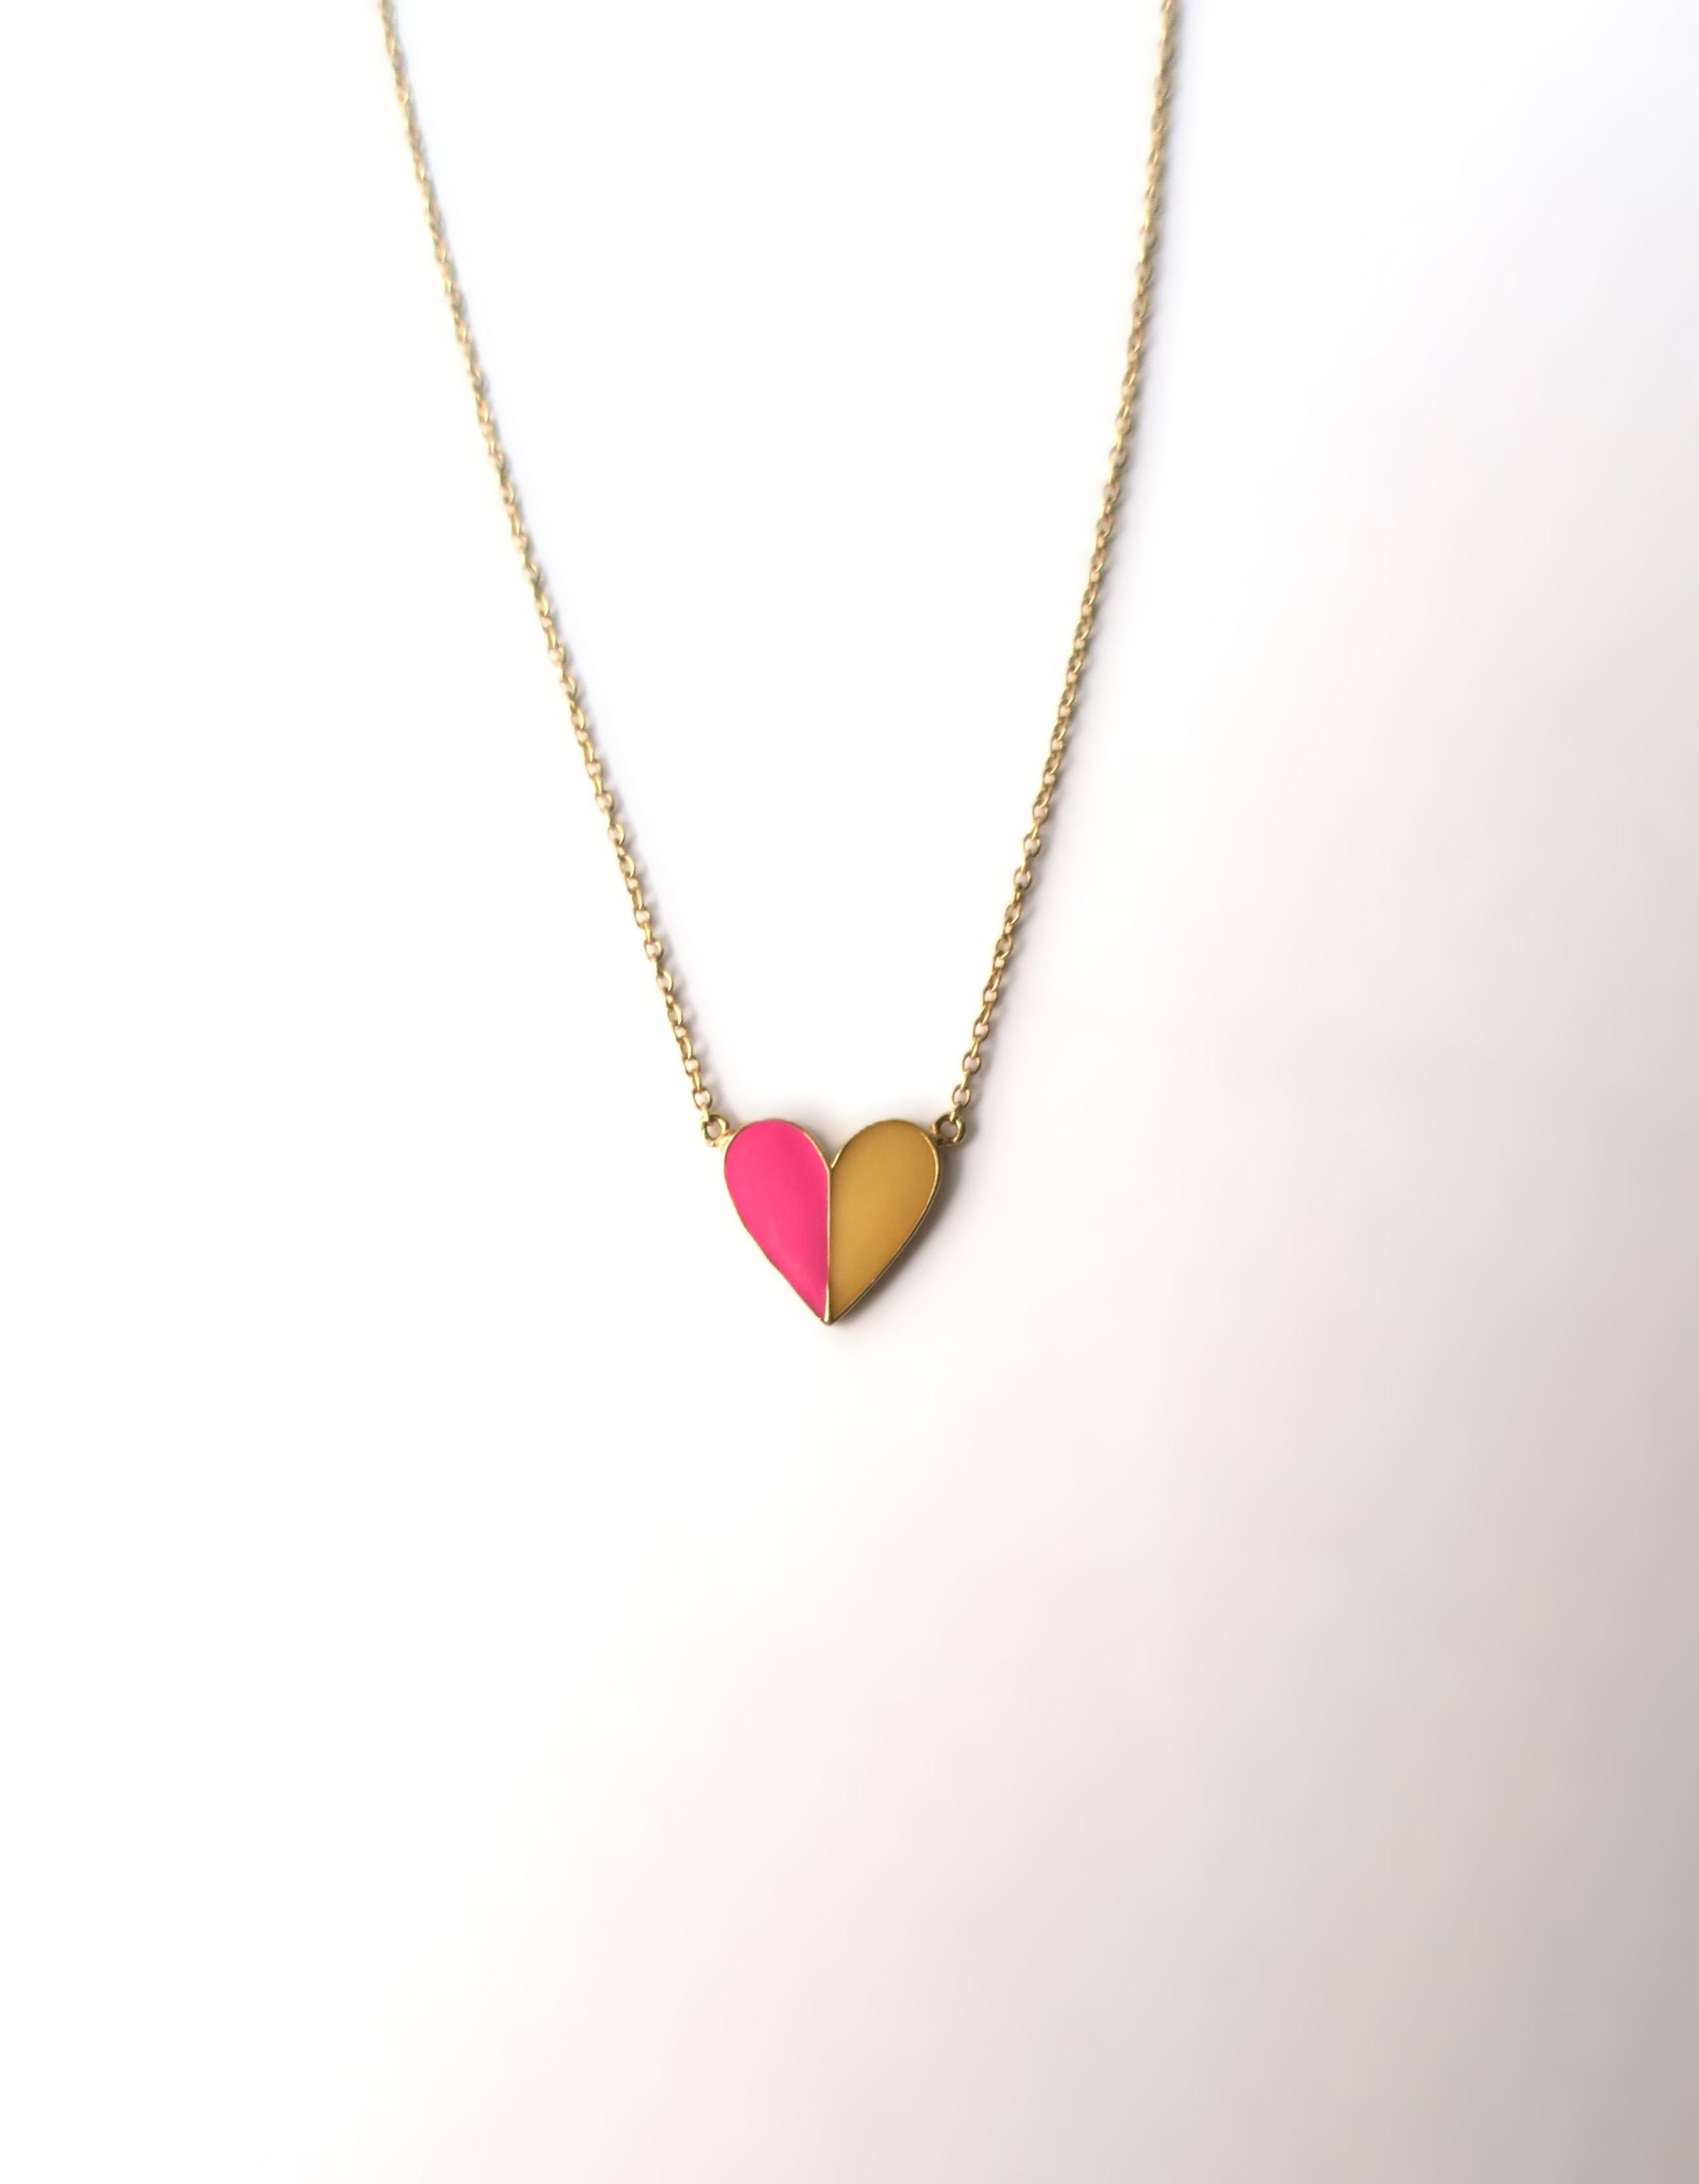 Eine schöne italienische Herzkette aus 14-karätigem Gold und Emaille (leuchtend rosa und gelb). Die Farben erinnern an die italienische Sommerstimmung an der Küste. Wunderschön als eigenständige Halskette oder in Kombination mit anderen Halsketten.